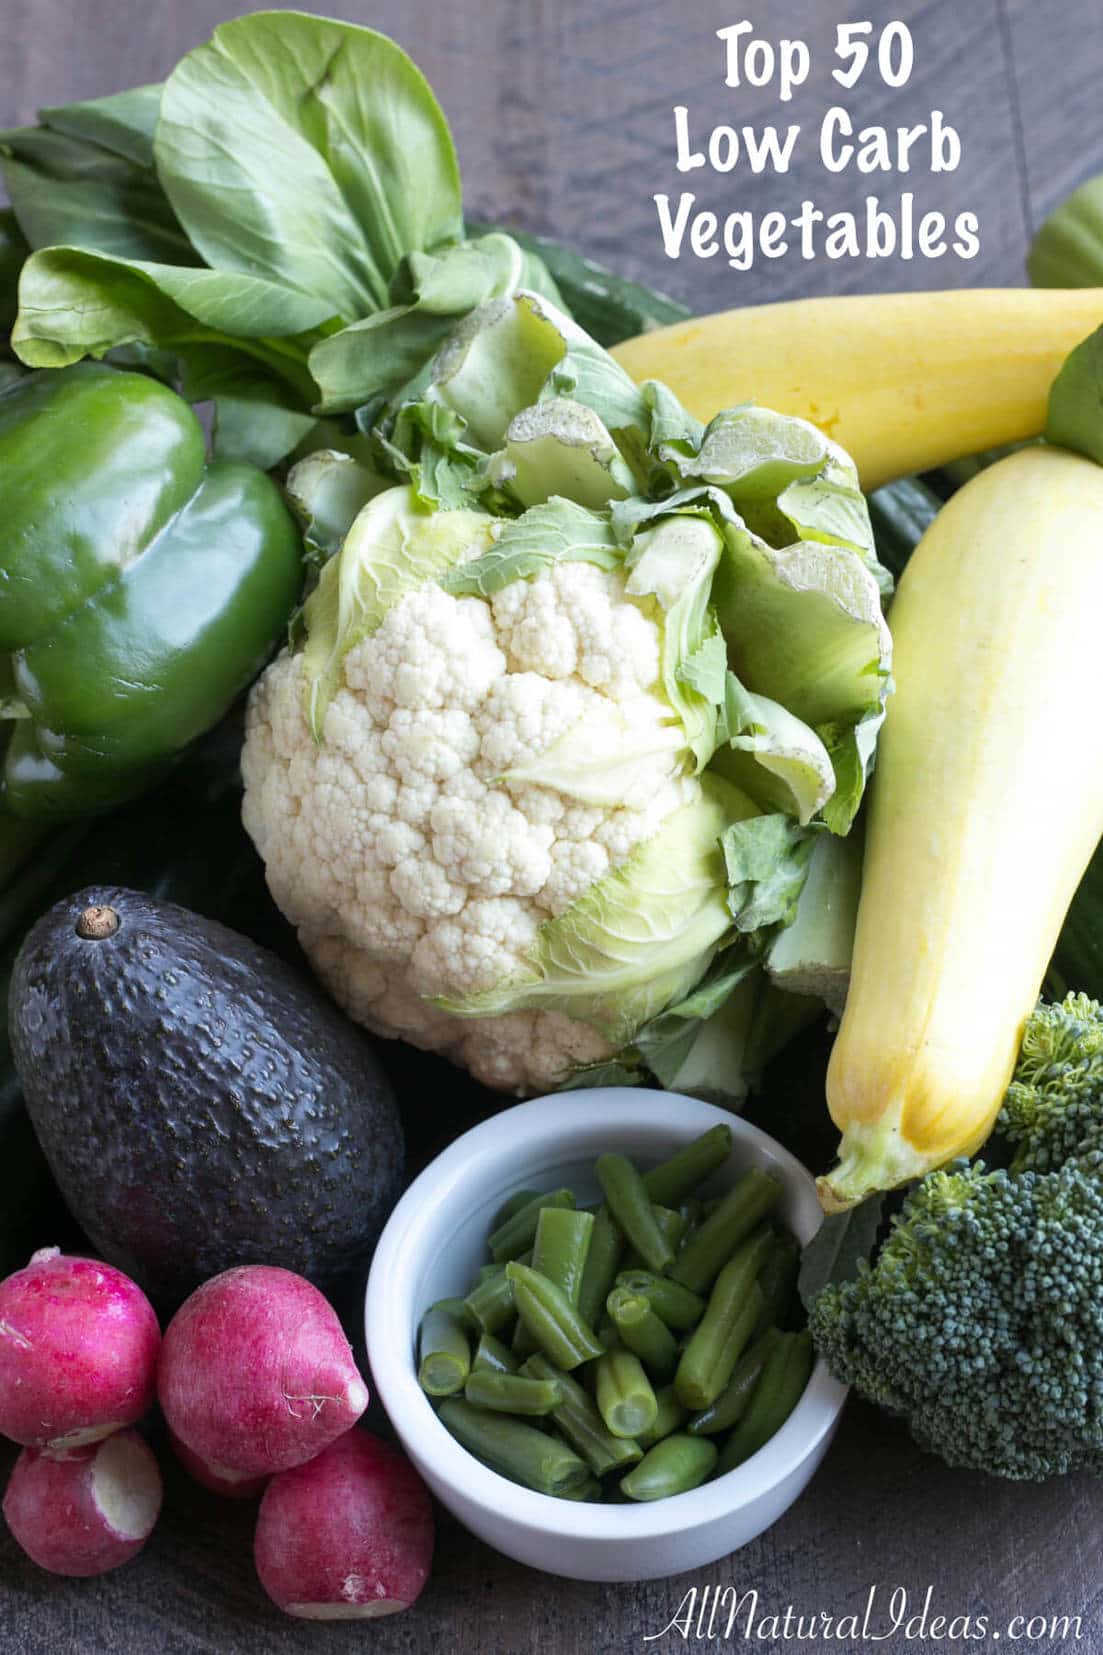 Quelles sont les meilleures légumes à manger sur un régime à faible teneur en glucides? Pour vous aider à choisir, nous avons trouvé une liste des légumes à base de glucides de nos 50 meilleurs choix.